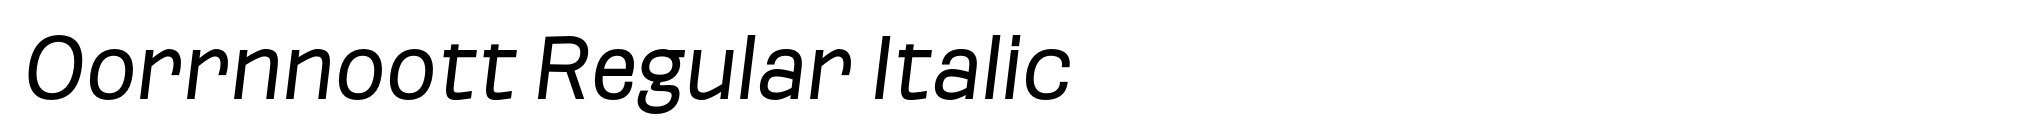 Oorrnnoott Regular Italic image